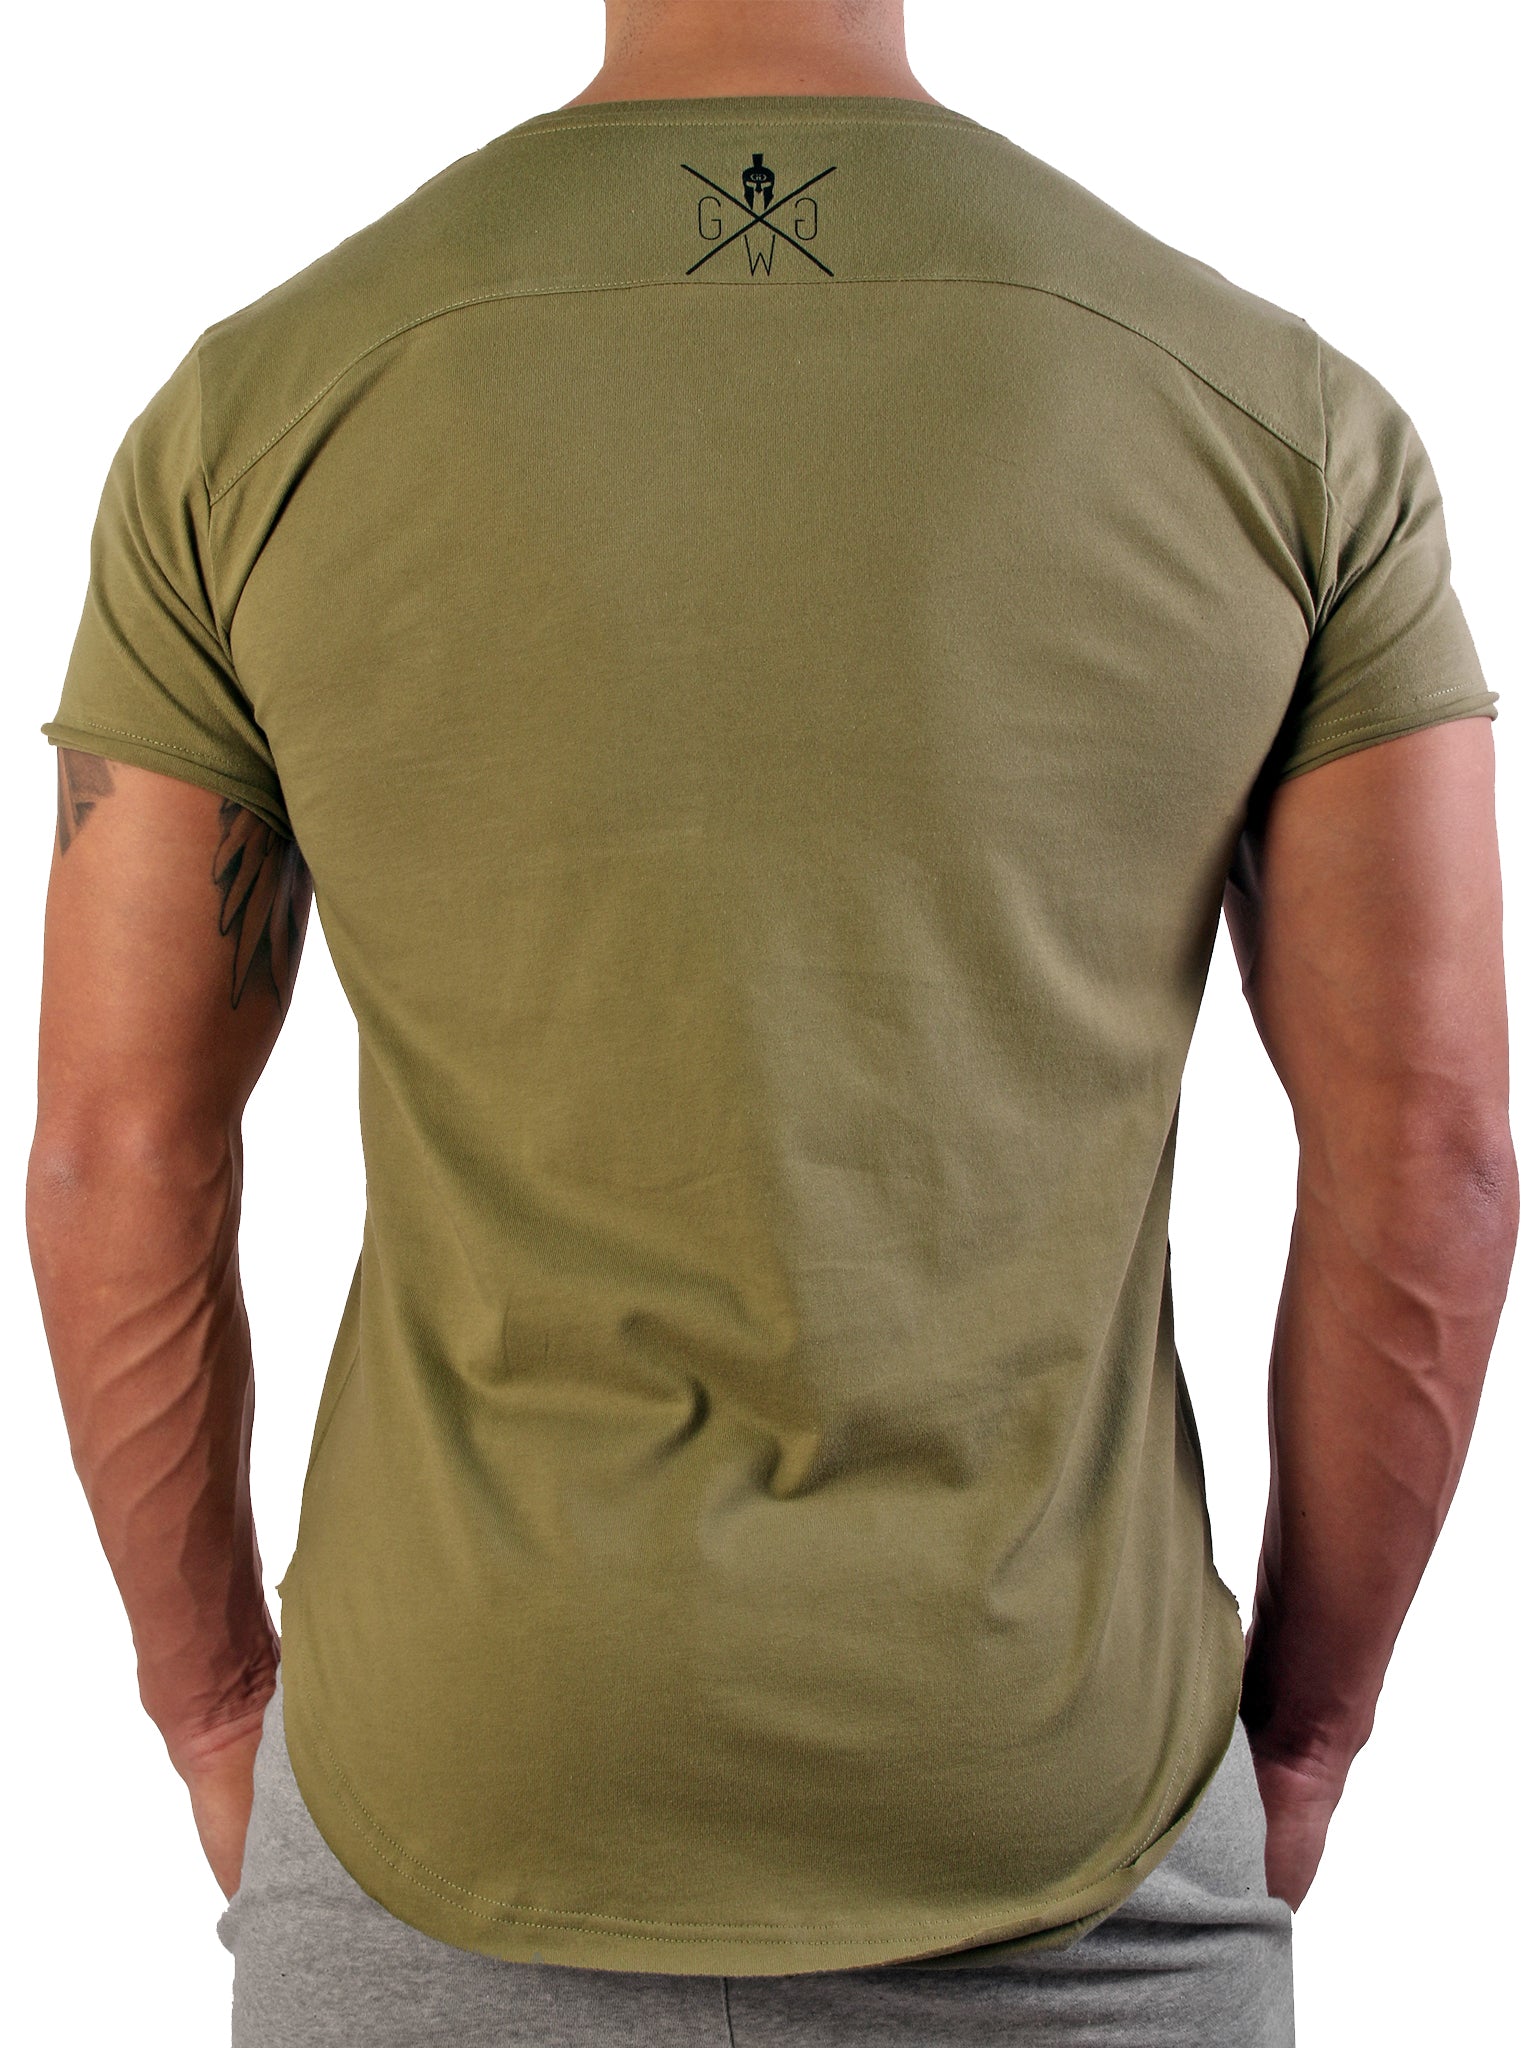 Schlank geschnittenes olivgrünes Herren T-Shirt, kombiniert klassischen Stil mit modernem Design.